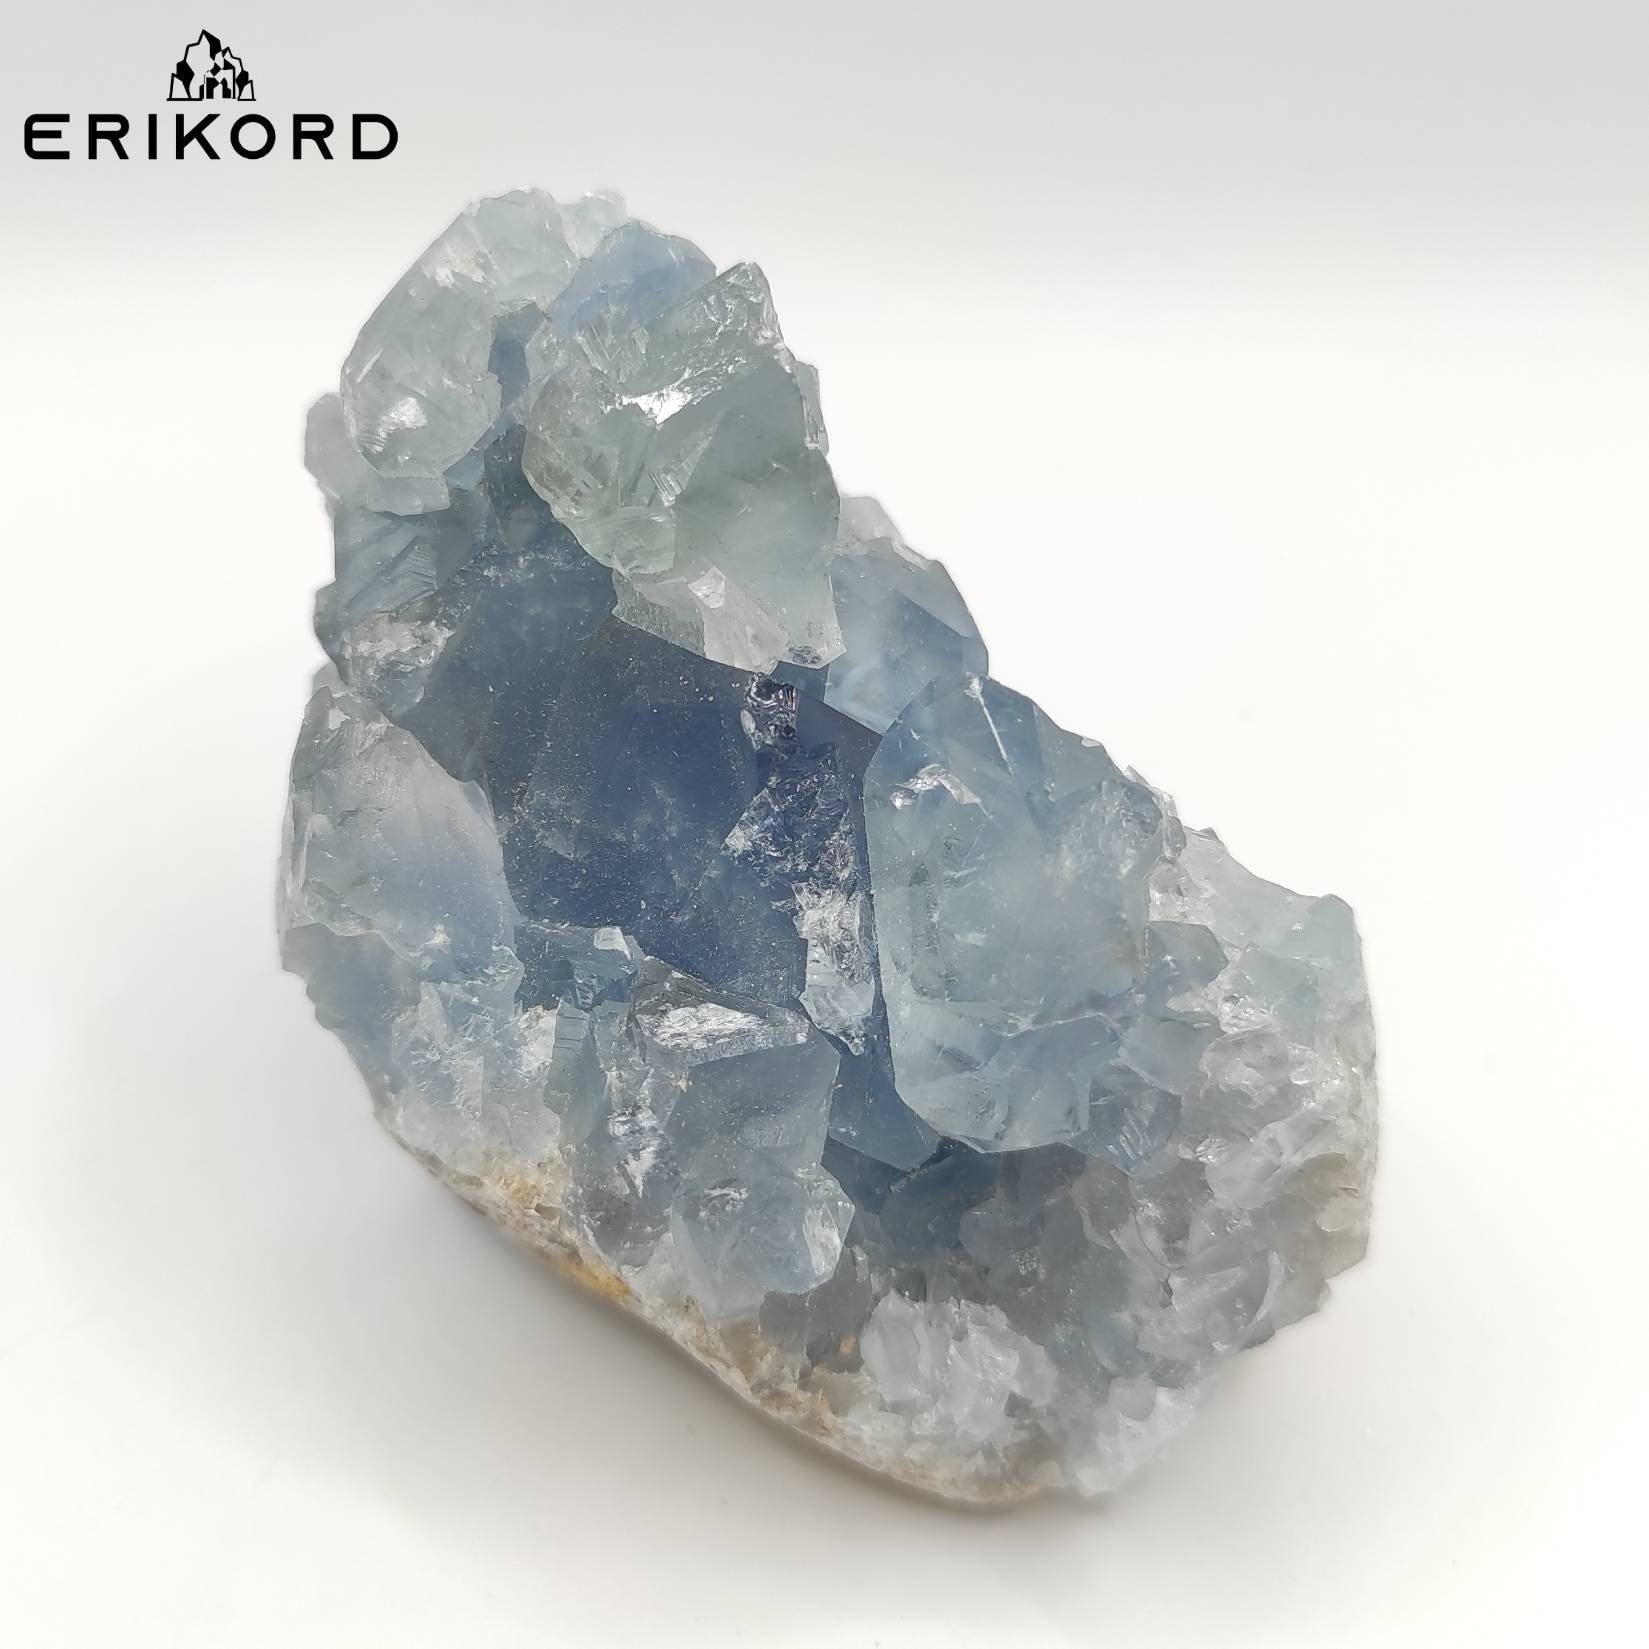 205g Blue Celestite Crystal Natural Blue Celeste Mineral Specimen Crystal Cluster Raw Blue Crystals Madagascar Raw Gems Rough Celestite Gem